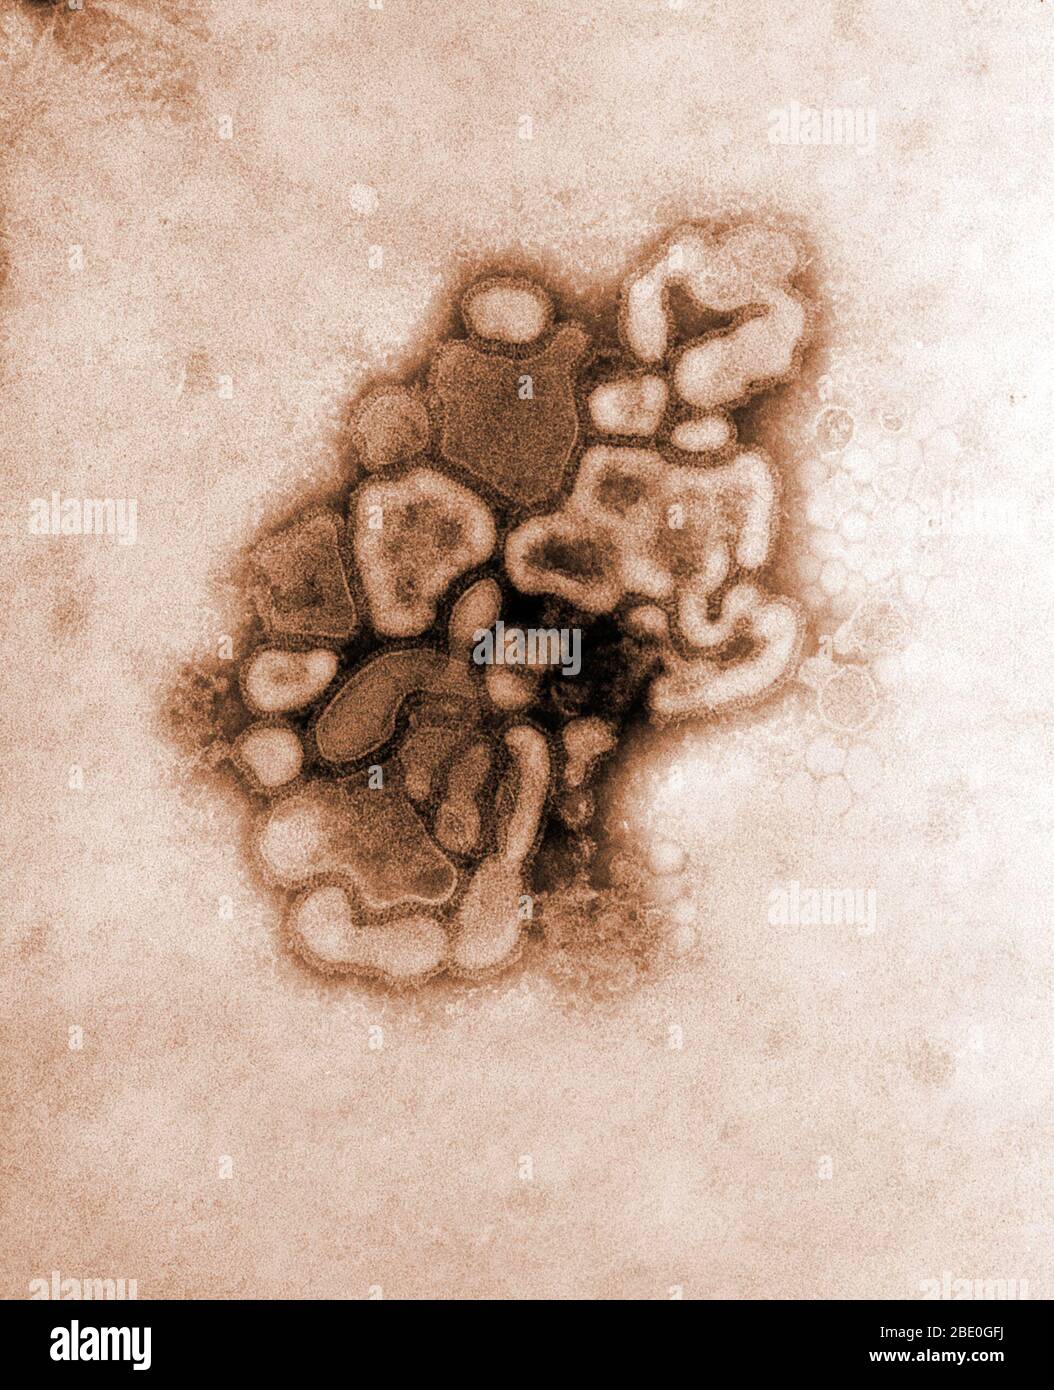 Micrografia elettronica a trasmissione colorizzata (TEM) del virus A/New Jersey/76 (Hsw1N1), mentre nel primo passaggio di sviluppo del virus attraverso un uovo di pollo. L'influenza suina (influenza suina) è una malattia respiratoria dei suini causata dall'influenza di tipo A che causa regolarmente focolai di influenza tra i suini. I virus dell'influenza suina causano alti livelli di malattia e bassi tassi di mortalità tra i suini. I virus dell'influenza suina possono circolare nei suini durante tutto l'anno, ma la maggior parte delle epidemie tra gli allevamenti suini si verificano durante la fine dell'autunno e nei mesi invernali, in modo simile a quello degli esseri umani. Il virus classico dell'influenza suina (un tipo di influenza Foto Stock